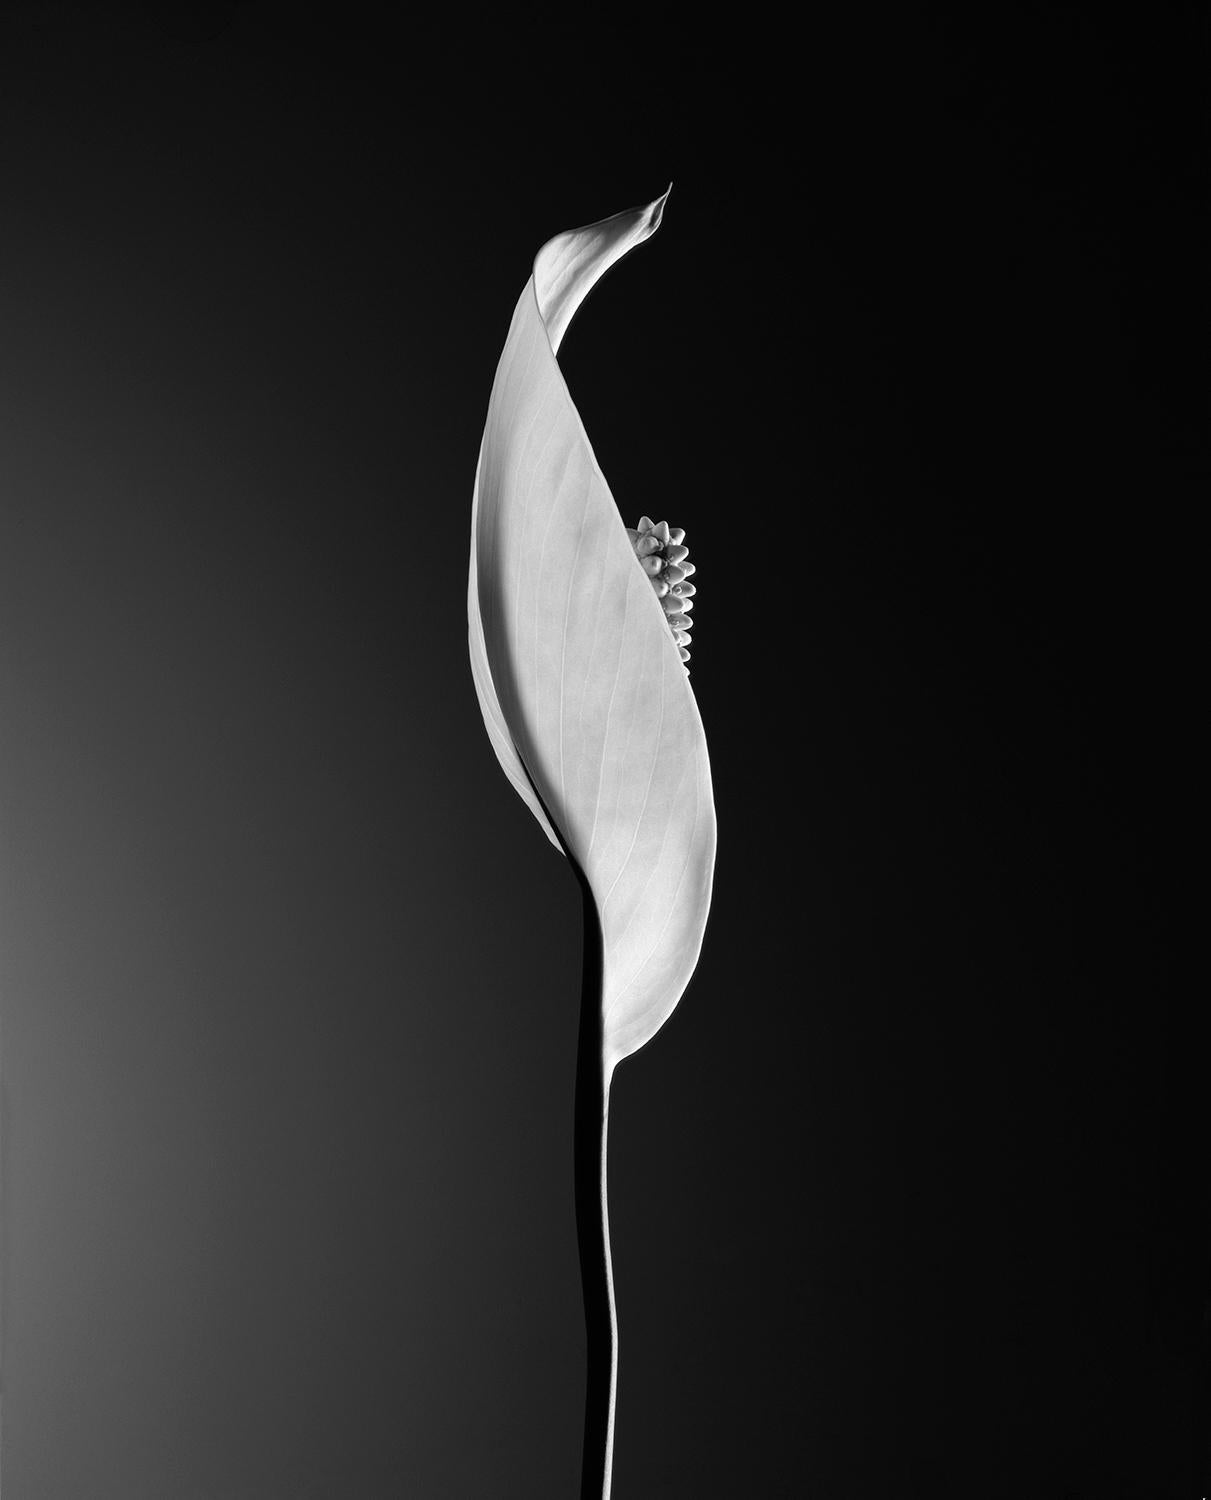 Edition de 25
signé et numéroté par l'artiste

Cette nature morte de la fleur "Calla" a été prise sur un film analogique de 4x5 pouces dans les années 80.

JJK est le pseudonyme de l'un des artistes photographes les plus célèbres au monde.
Dans sa